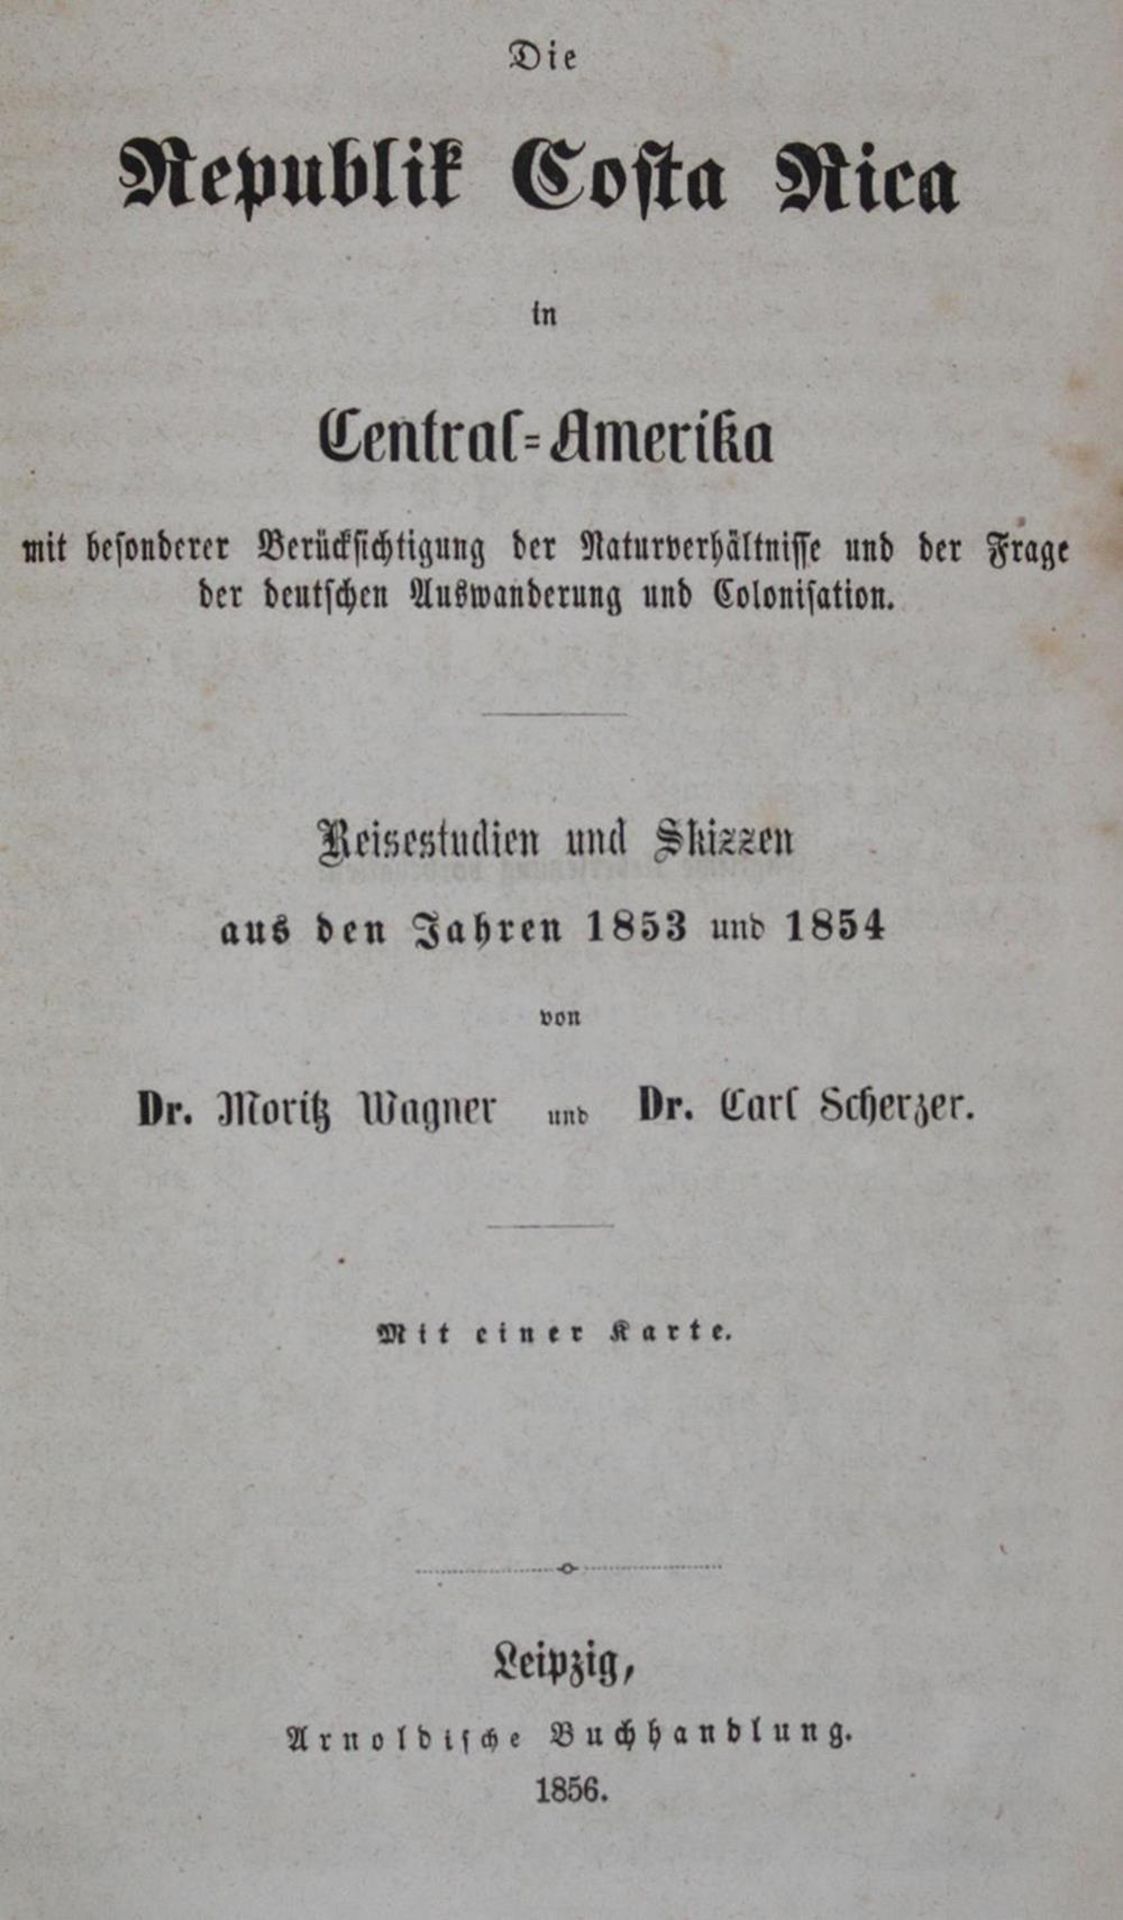 Wagner,M. u. C.Scherzer.Die Republik Costa Rica in Central - Amerika mit besonderer Berücksichtigung